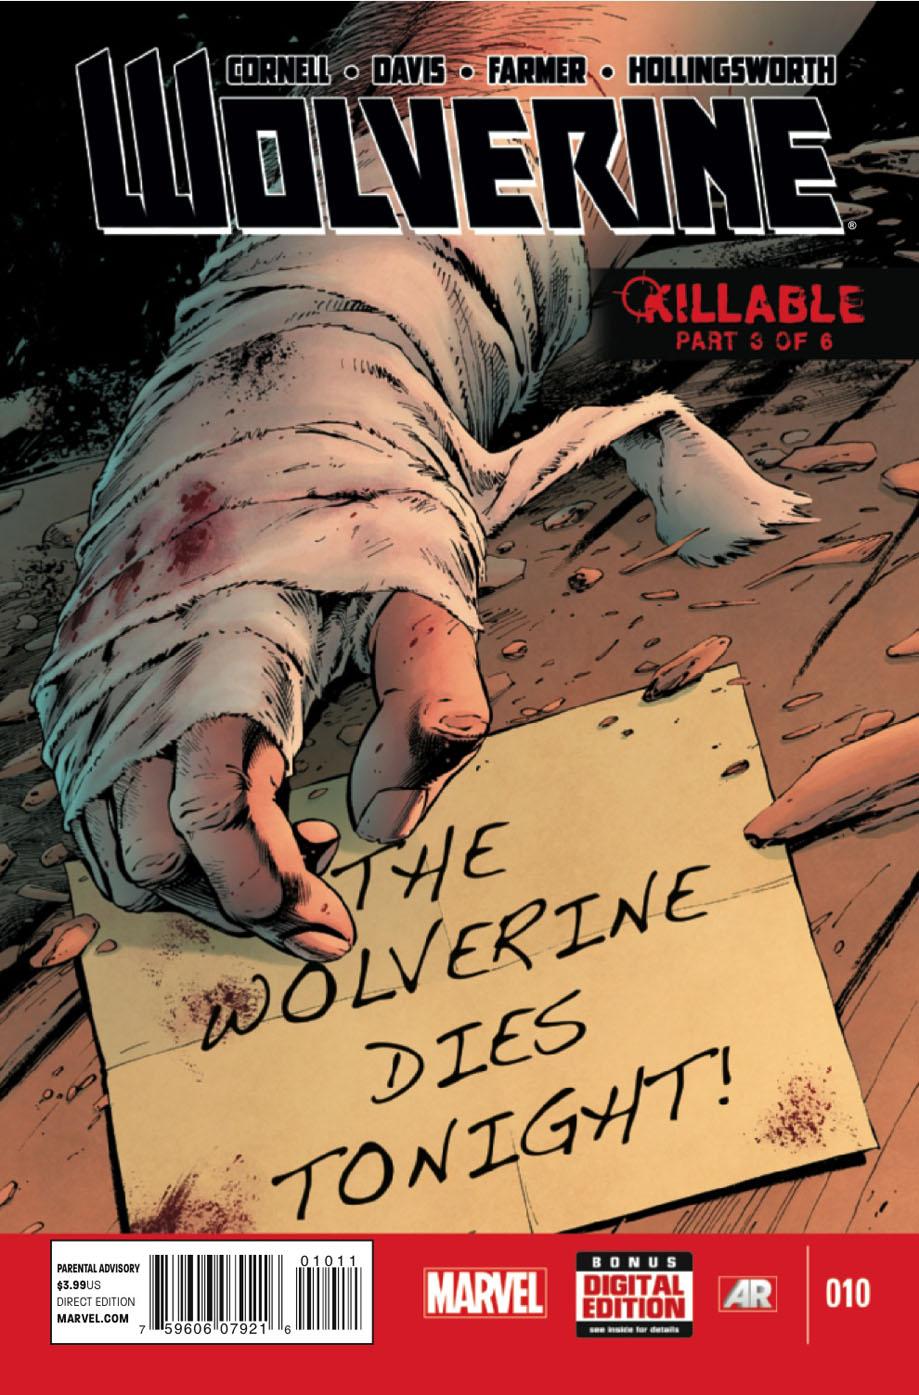 Wolverine Vol. 5 #10